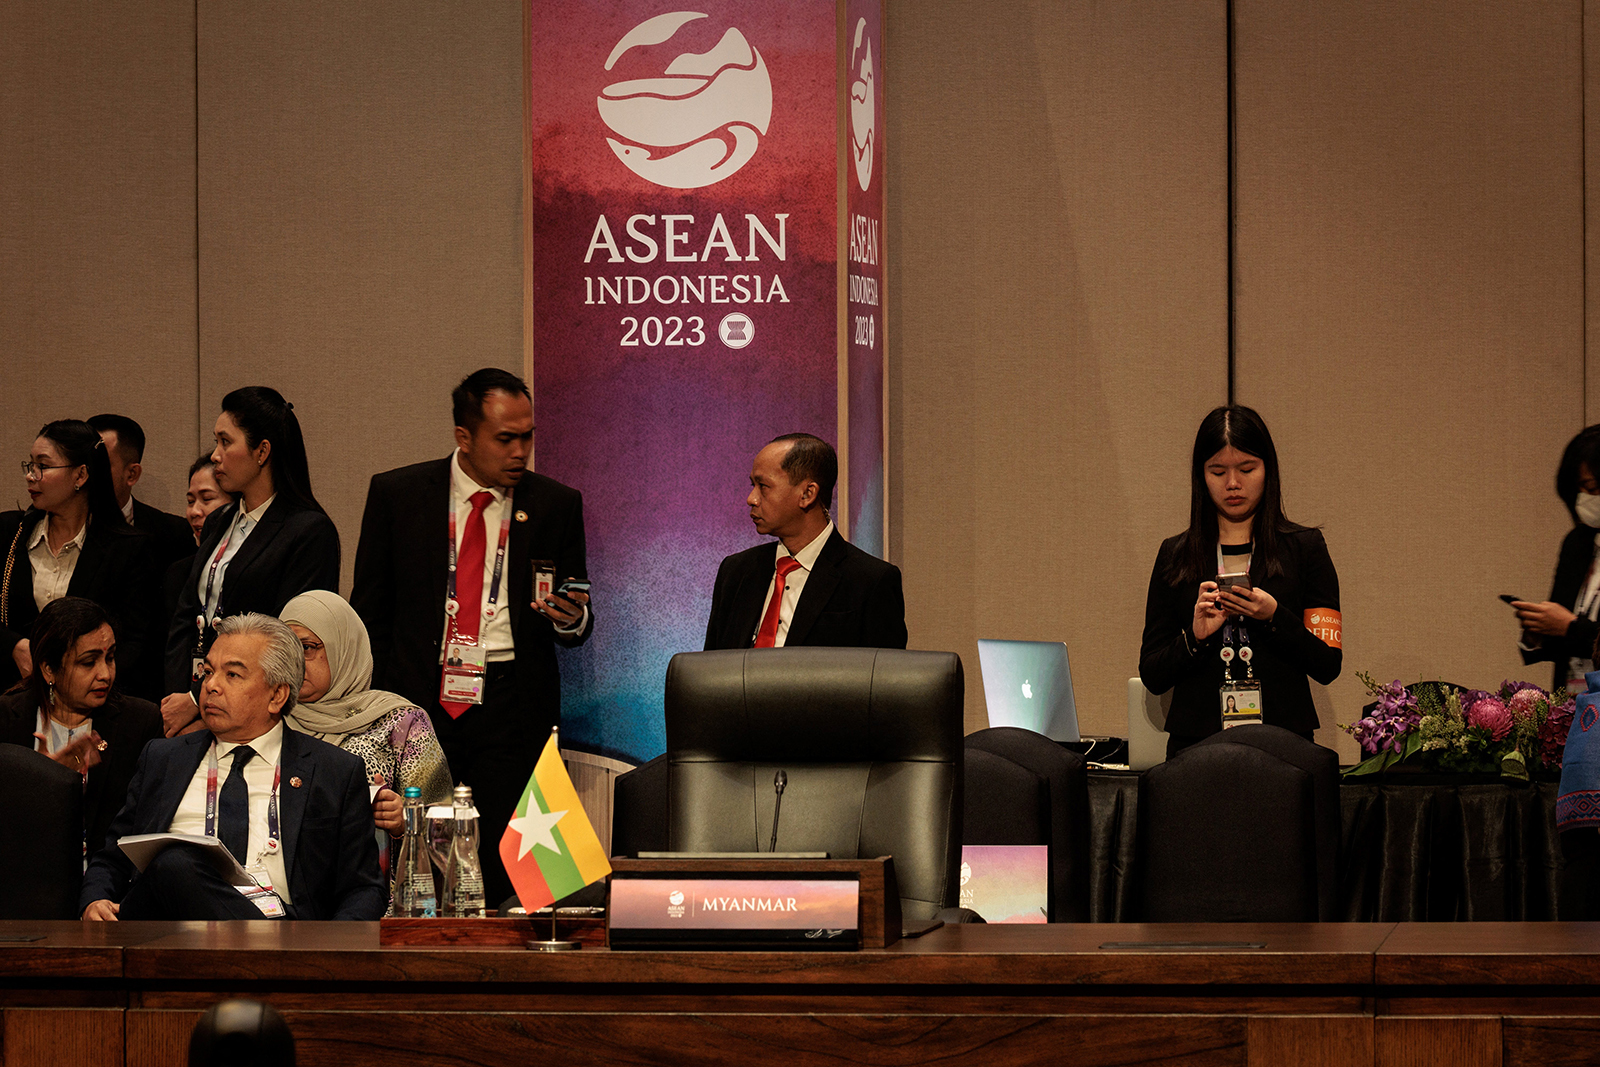 Vertice ASEAN  approva conclusioni  sulla Birmania:  formata troika per attuazione dell'accordo in 5 punti